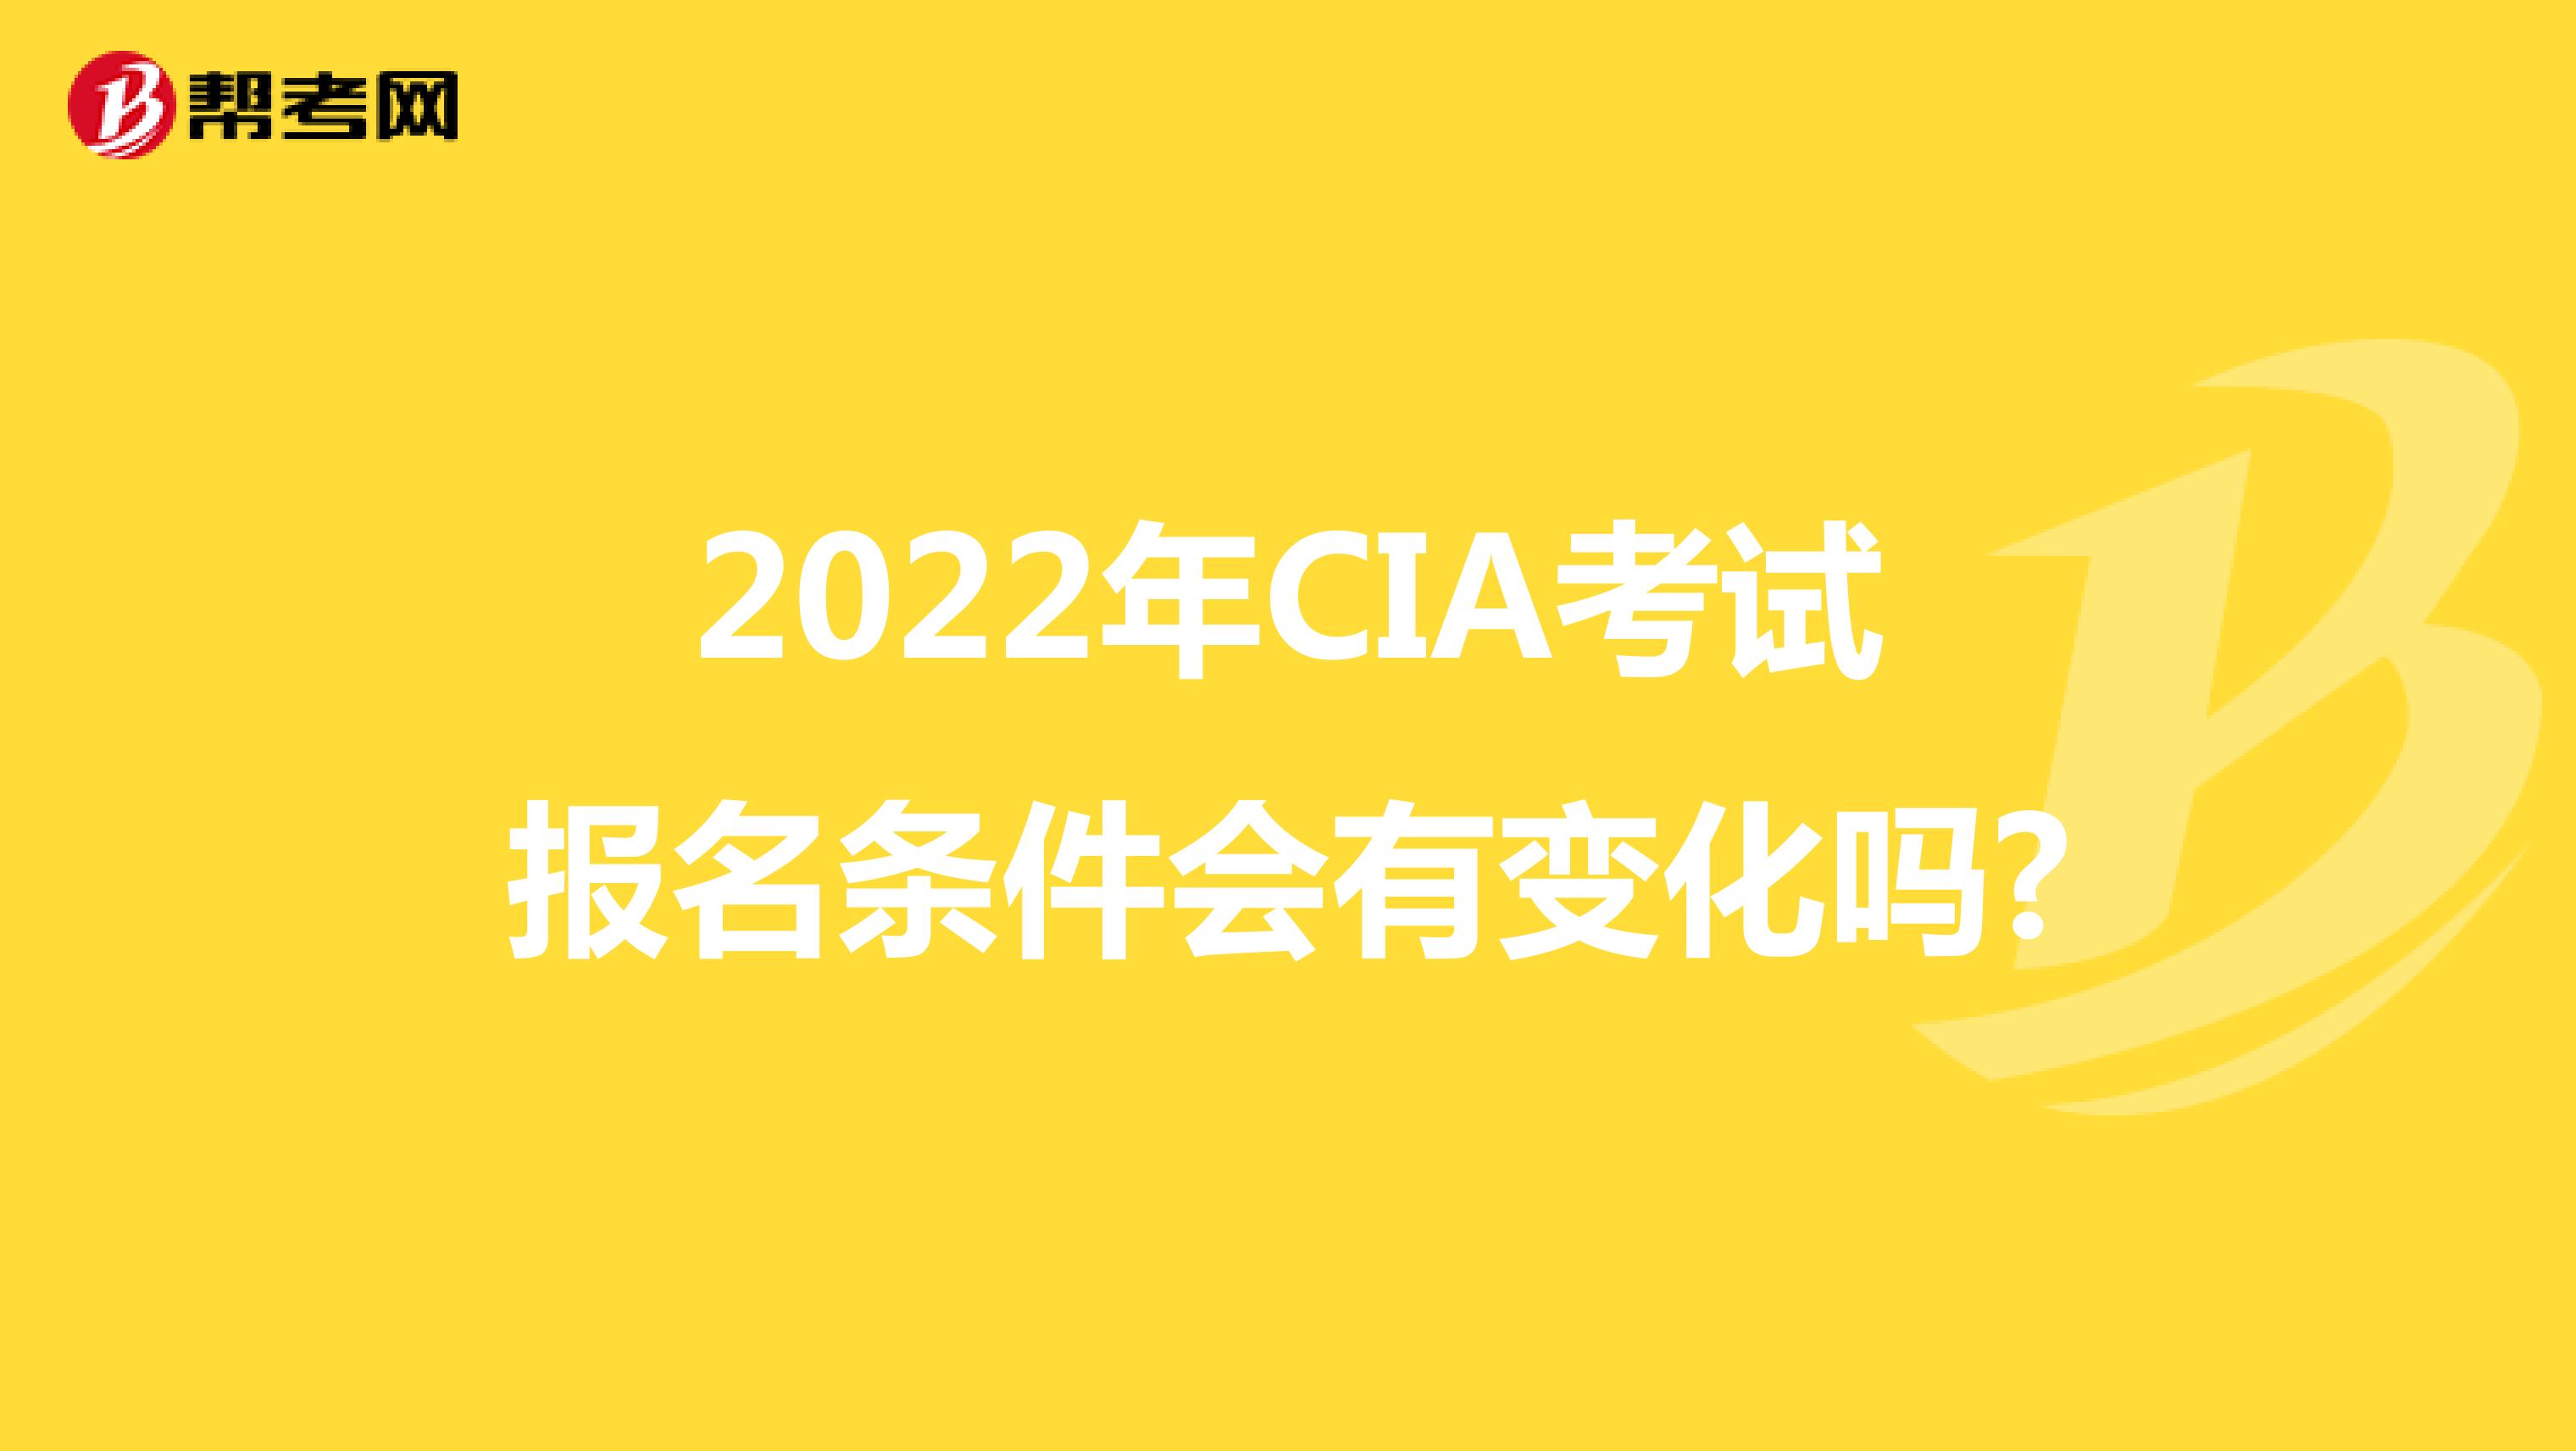 2022年CIA考试报名条件会有变化吗?